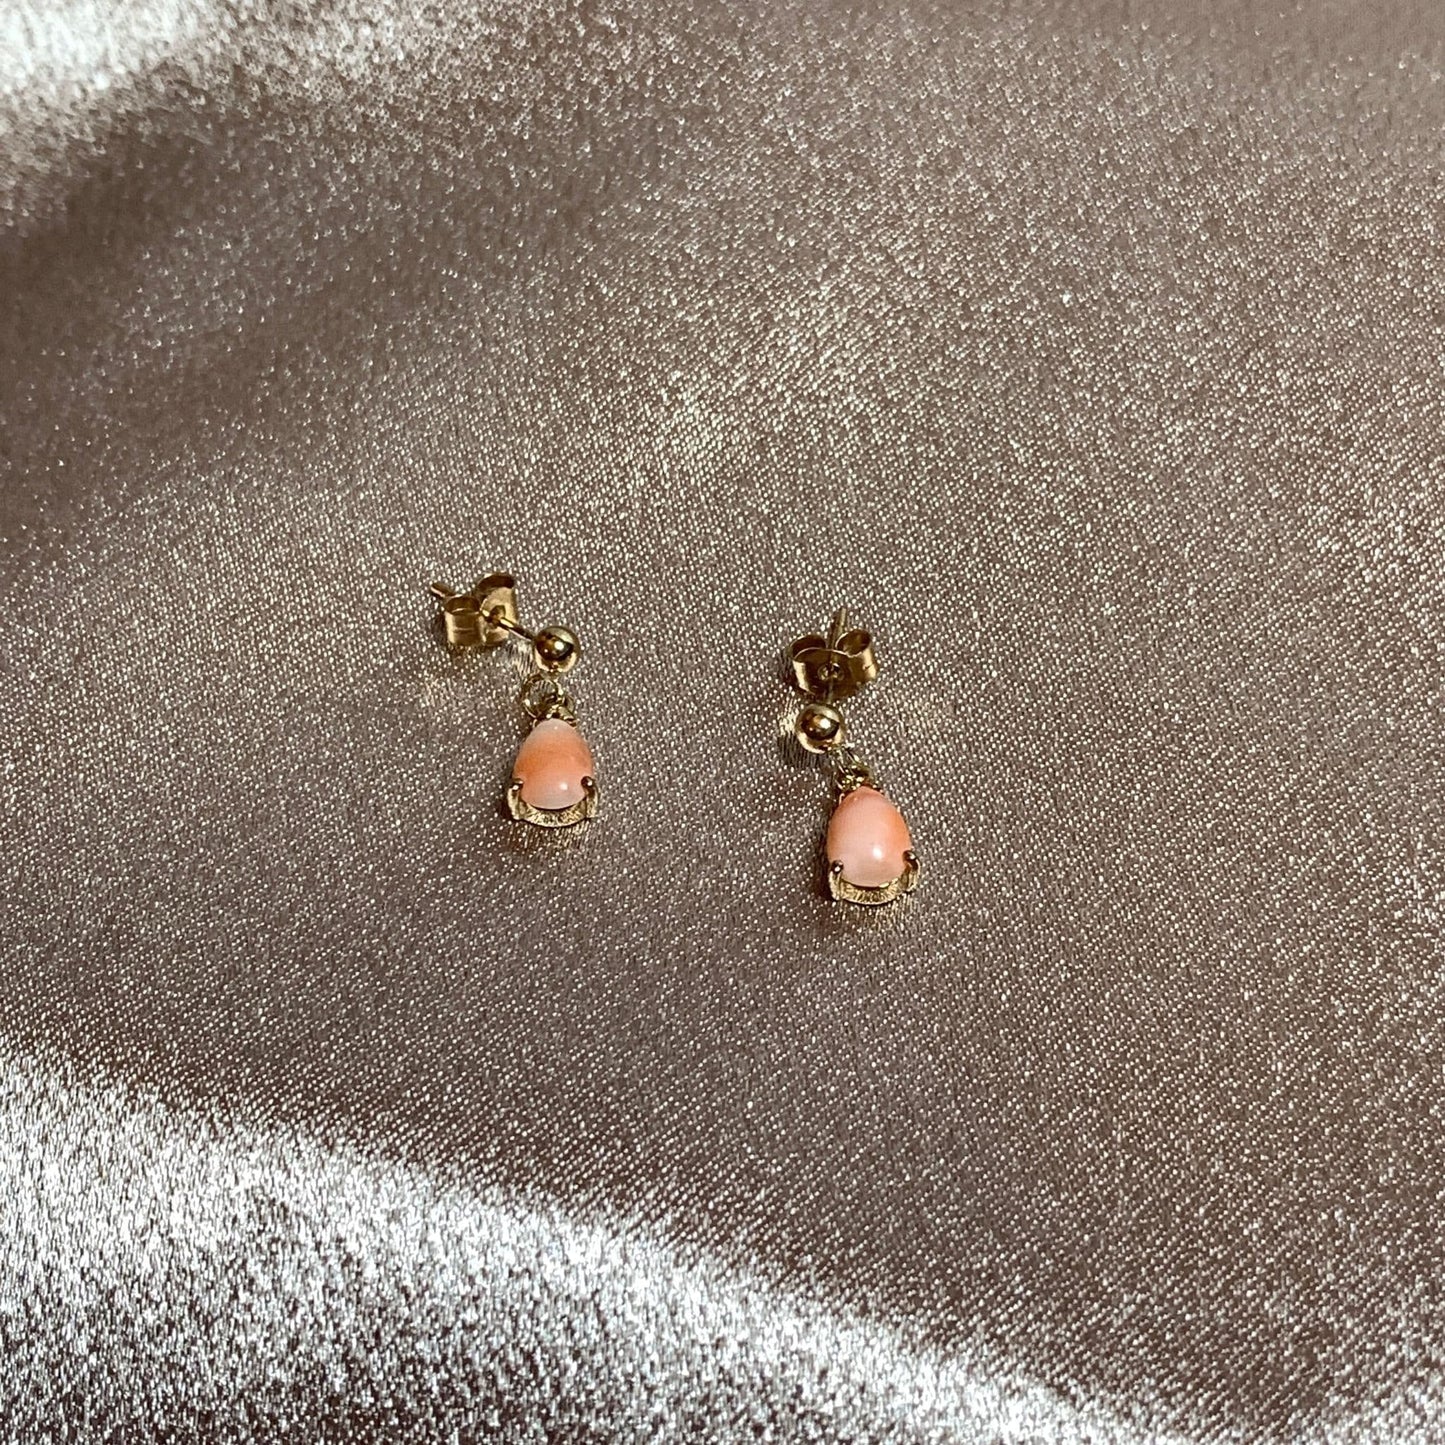 Coral yellow gold teardrop drop earrings